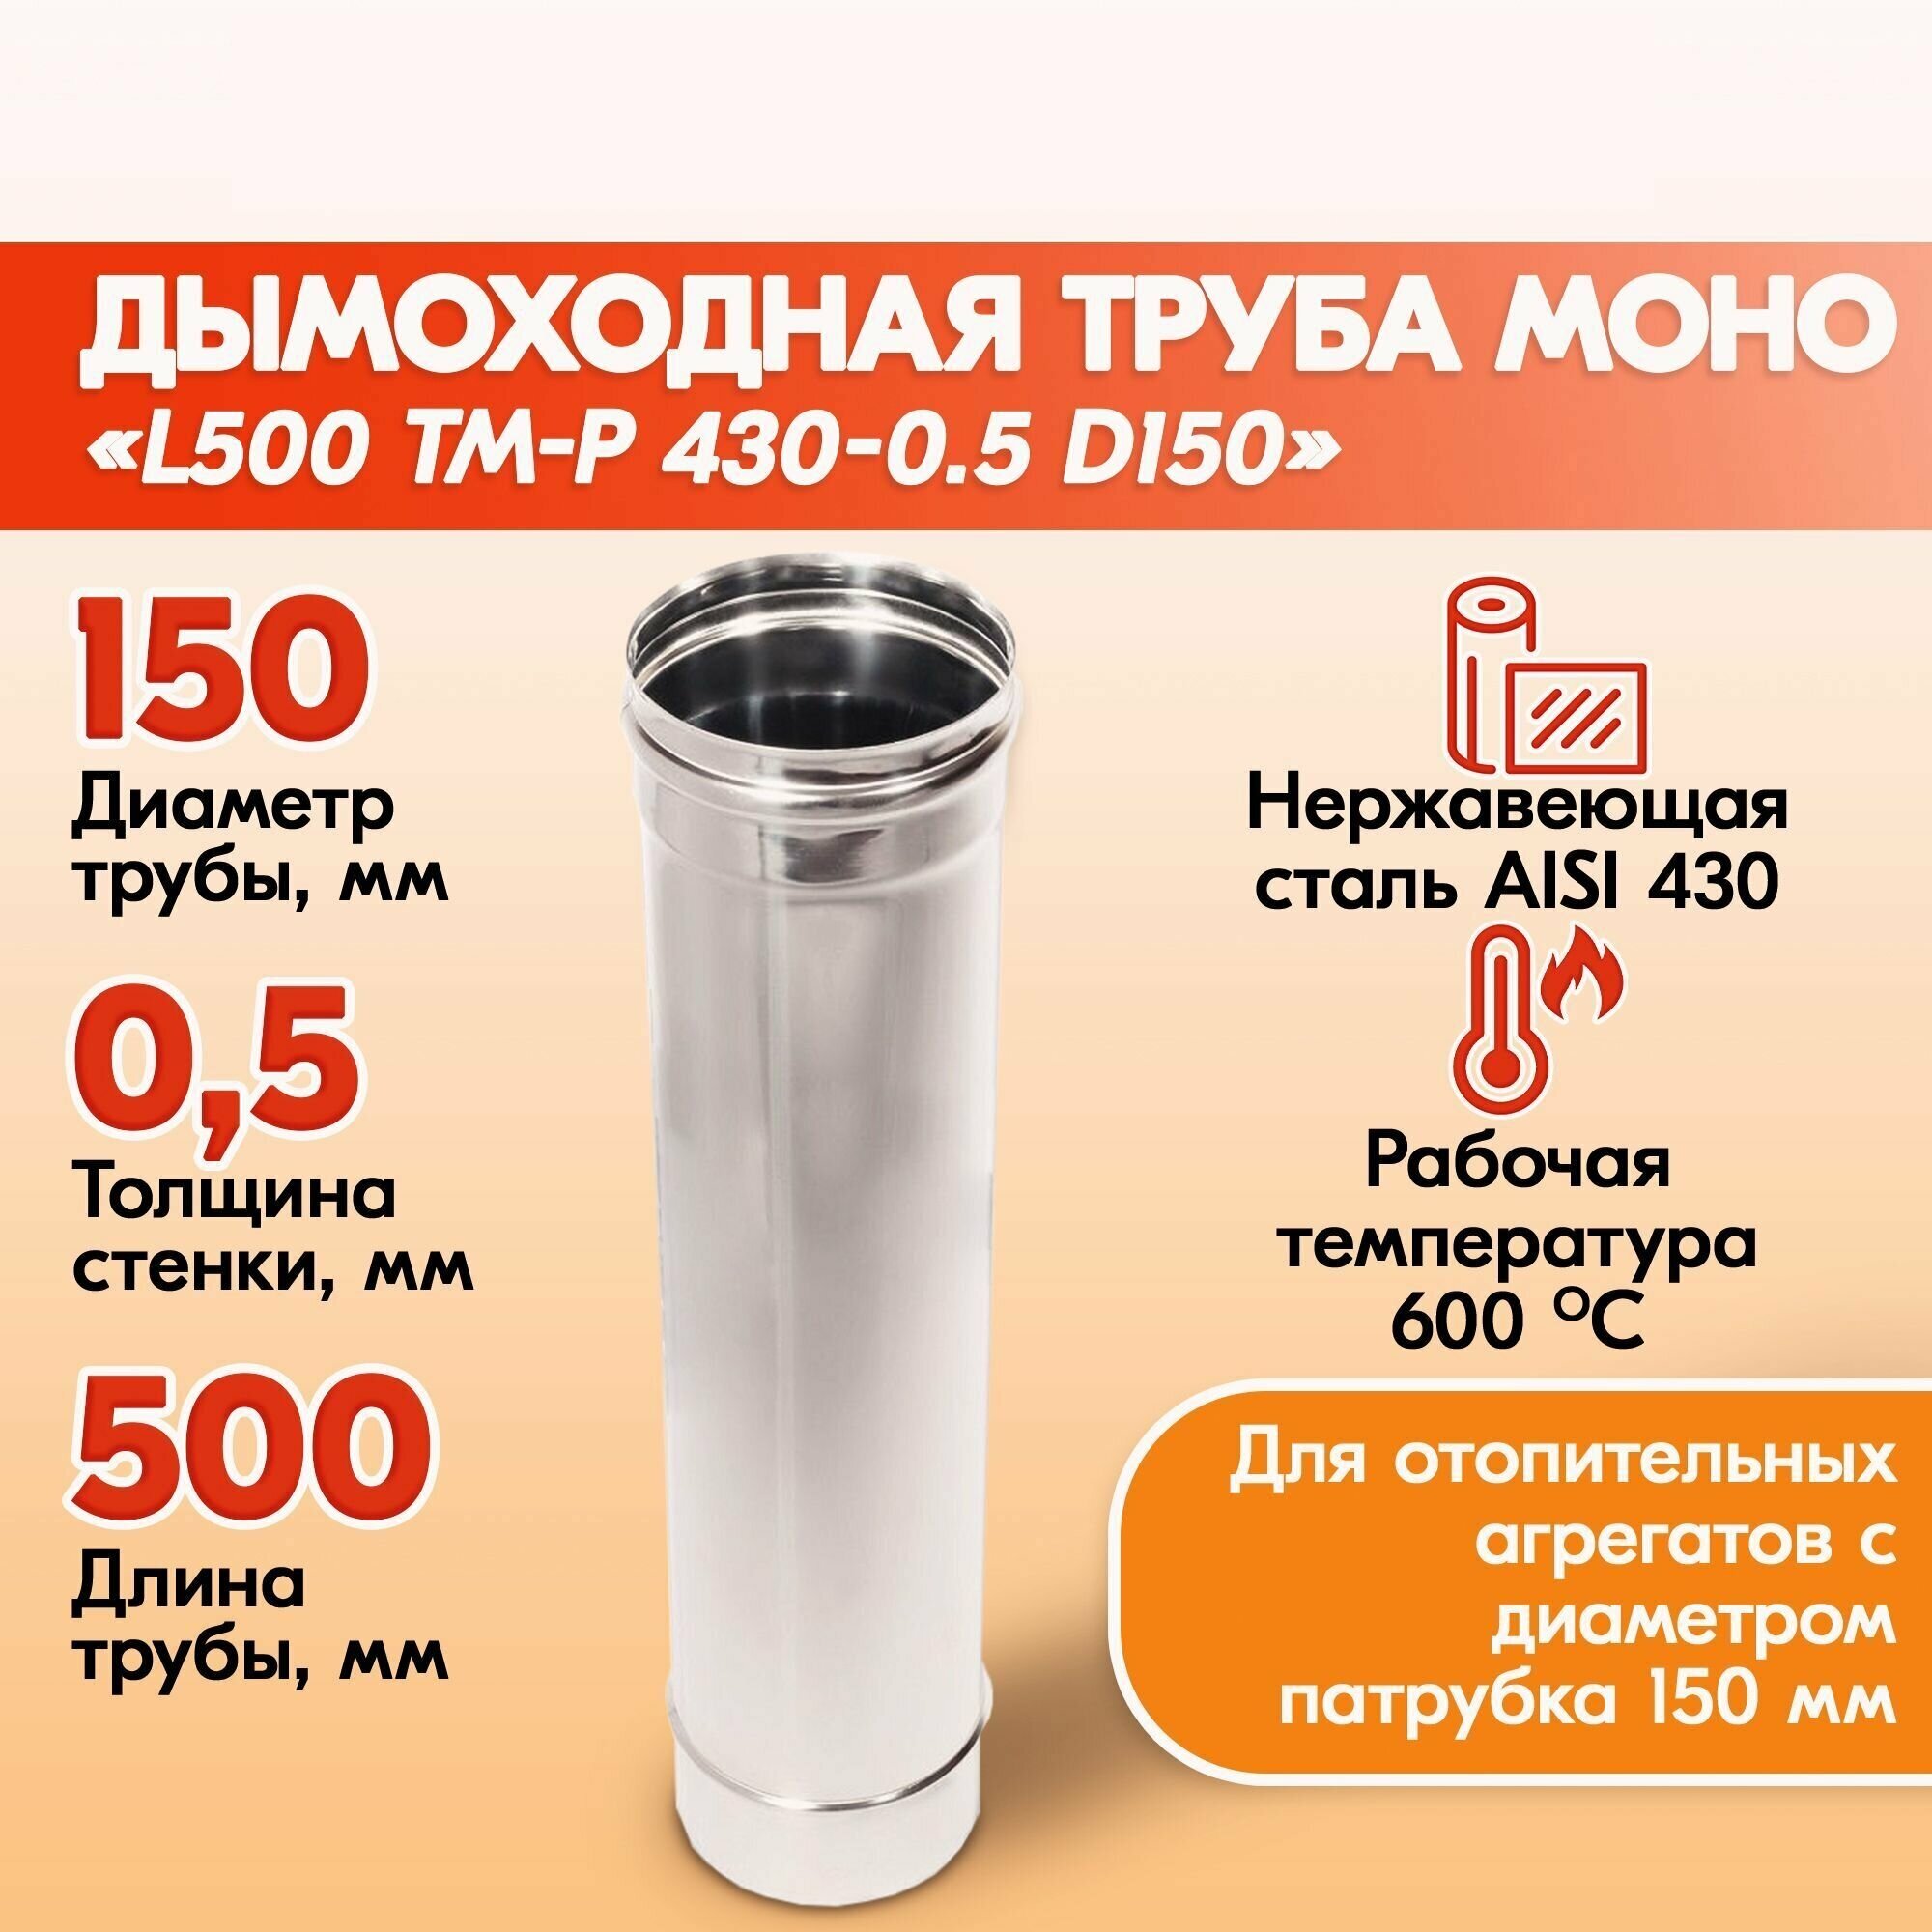 Труба L500 ТМ-Р 430-0.5 D150